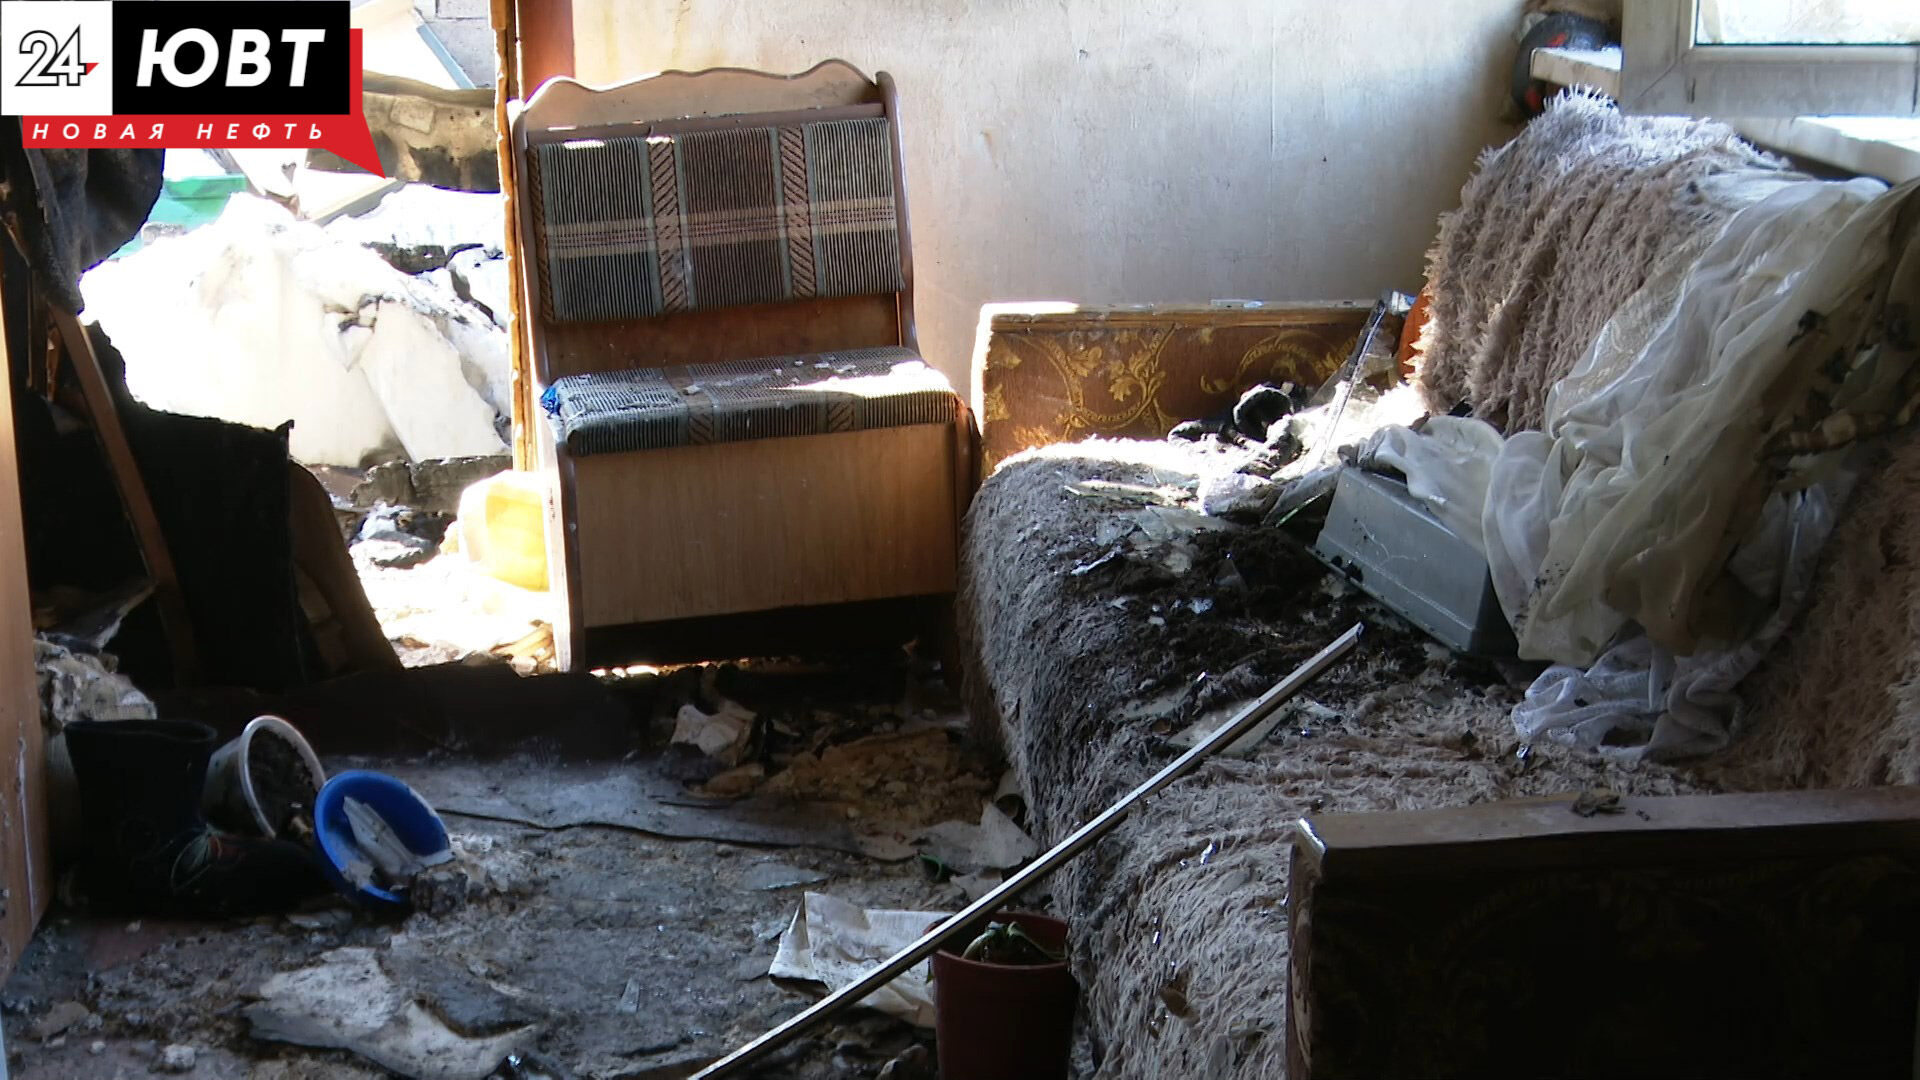 Дочь пыталась спасти мать: эксперты расследуют детали серьезного пожара в Альметьевске